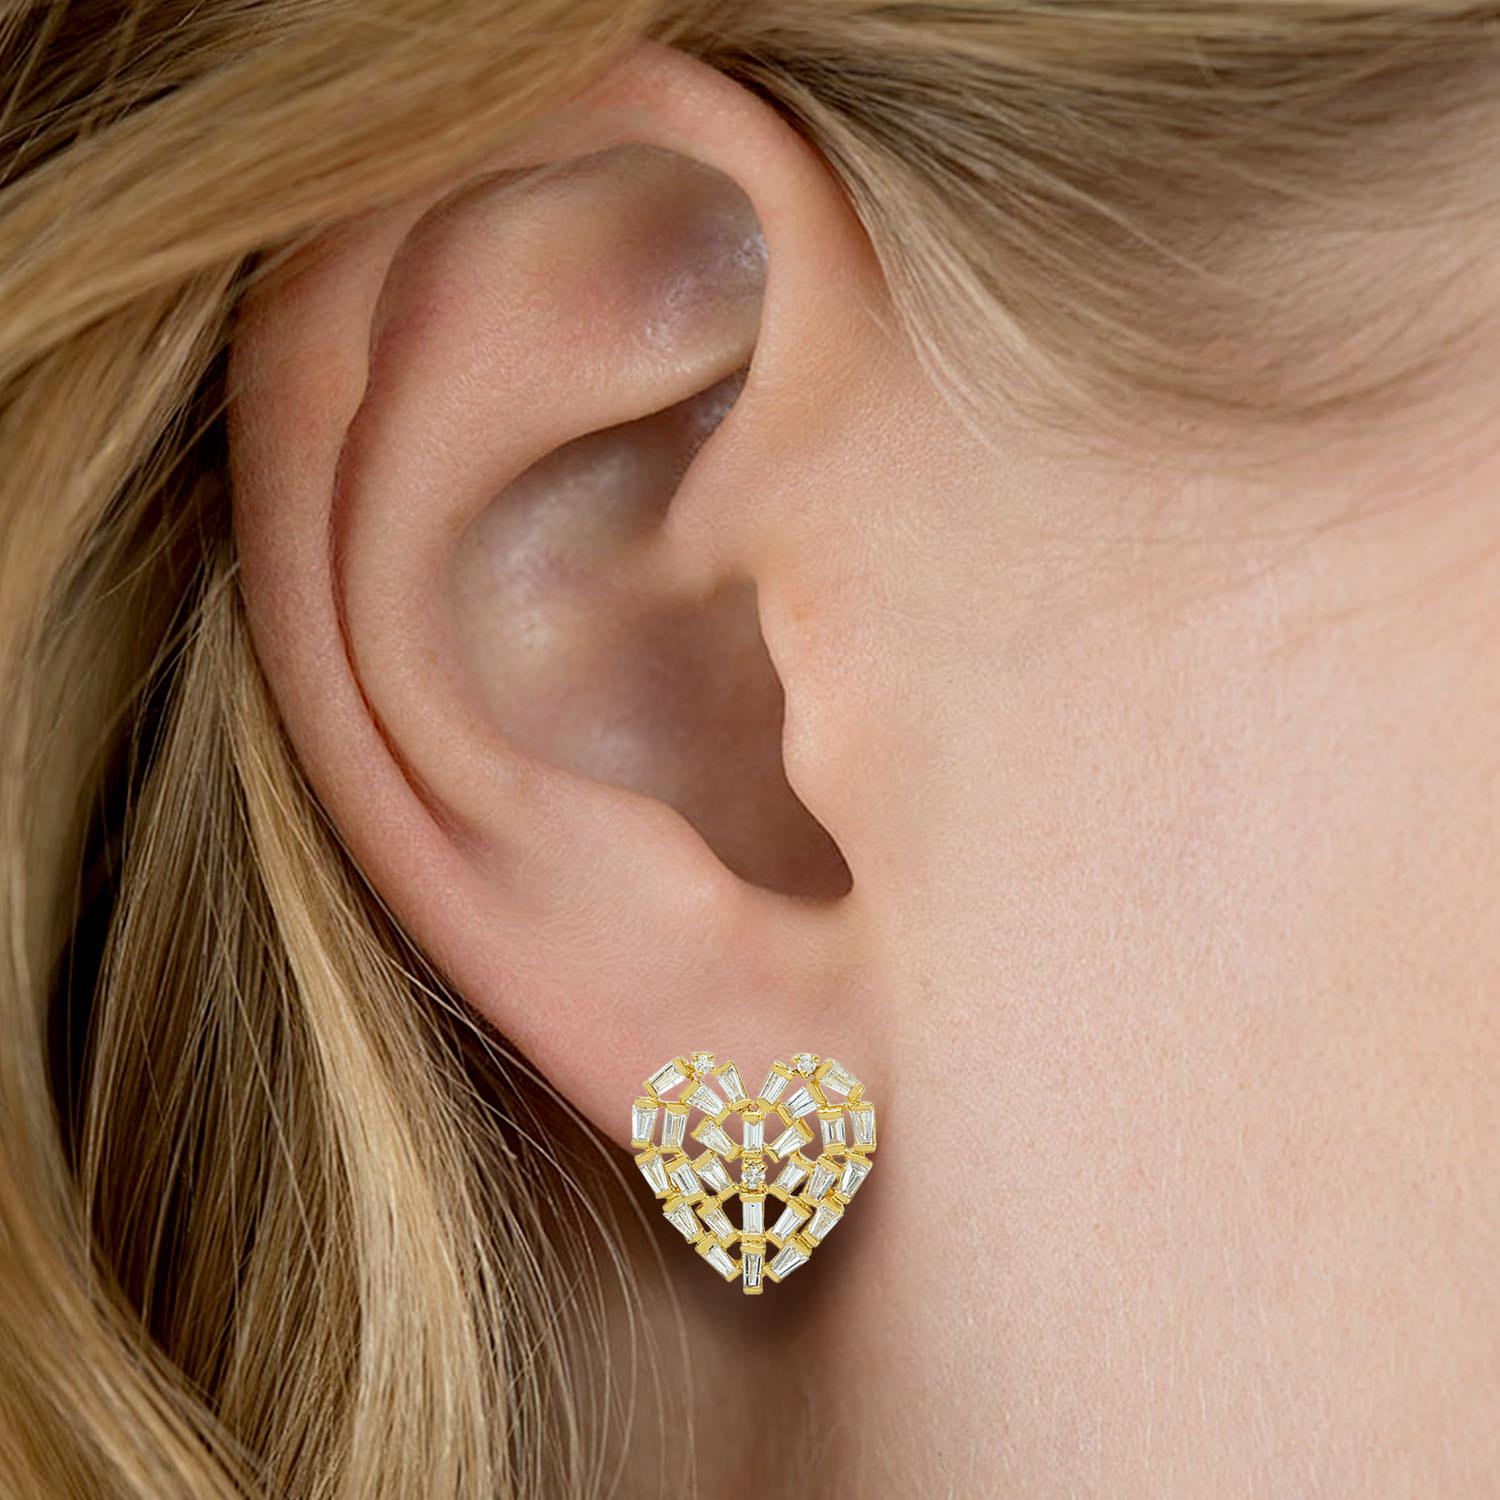 Ces boucles d'oreilles sont fabriquées à la main en or 18 carats et magnifiquement détaillées avec des diamants baguettes de 1,07 carats. 

SUIVRE  La vitrine de MEGHNA JEWELS pour découvrir la dernière collection et les pièces exclusives.  Meghna